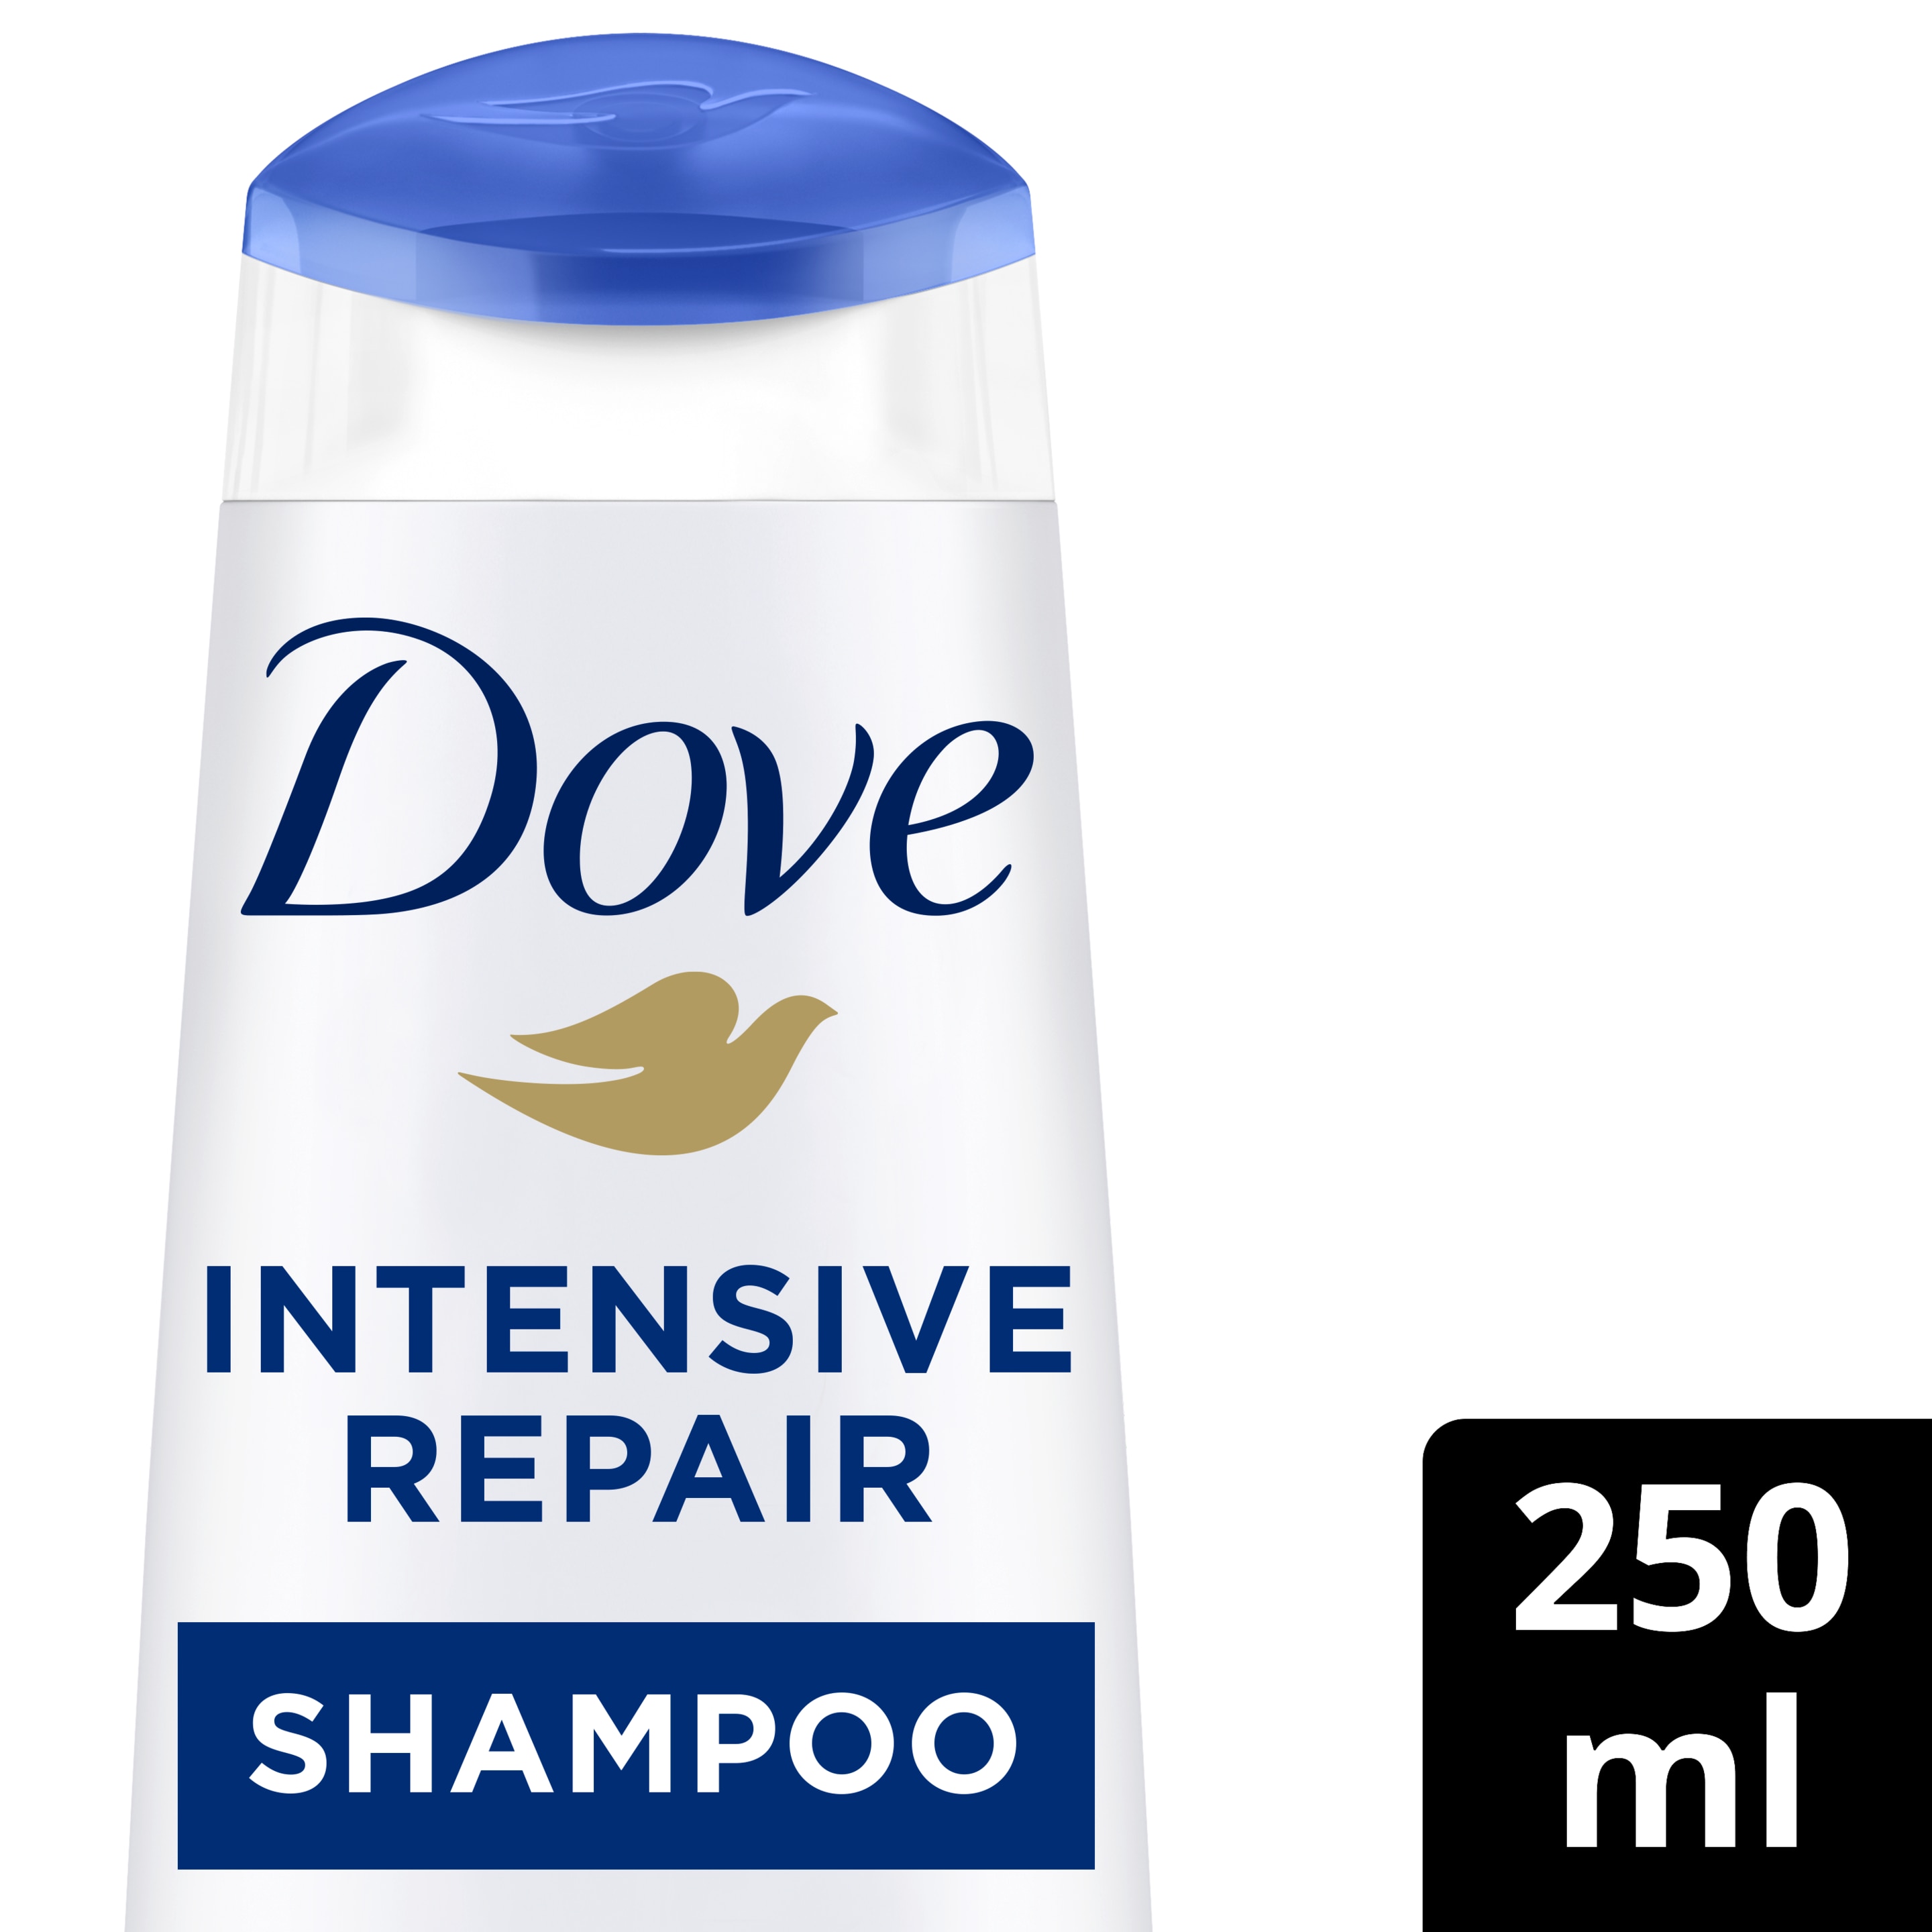 Intensive Repair Shampoo